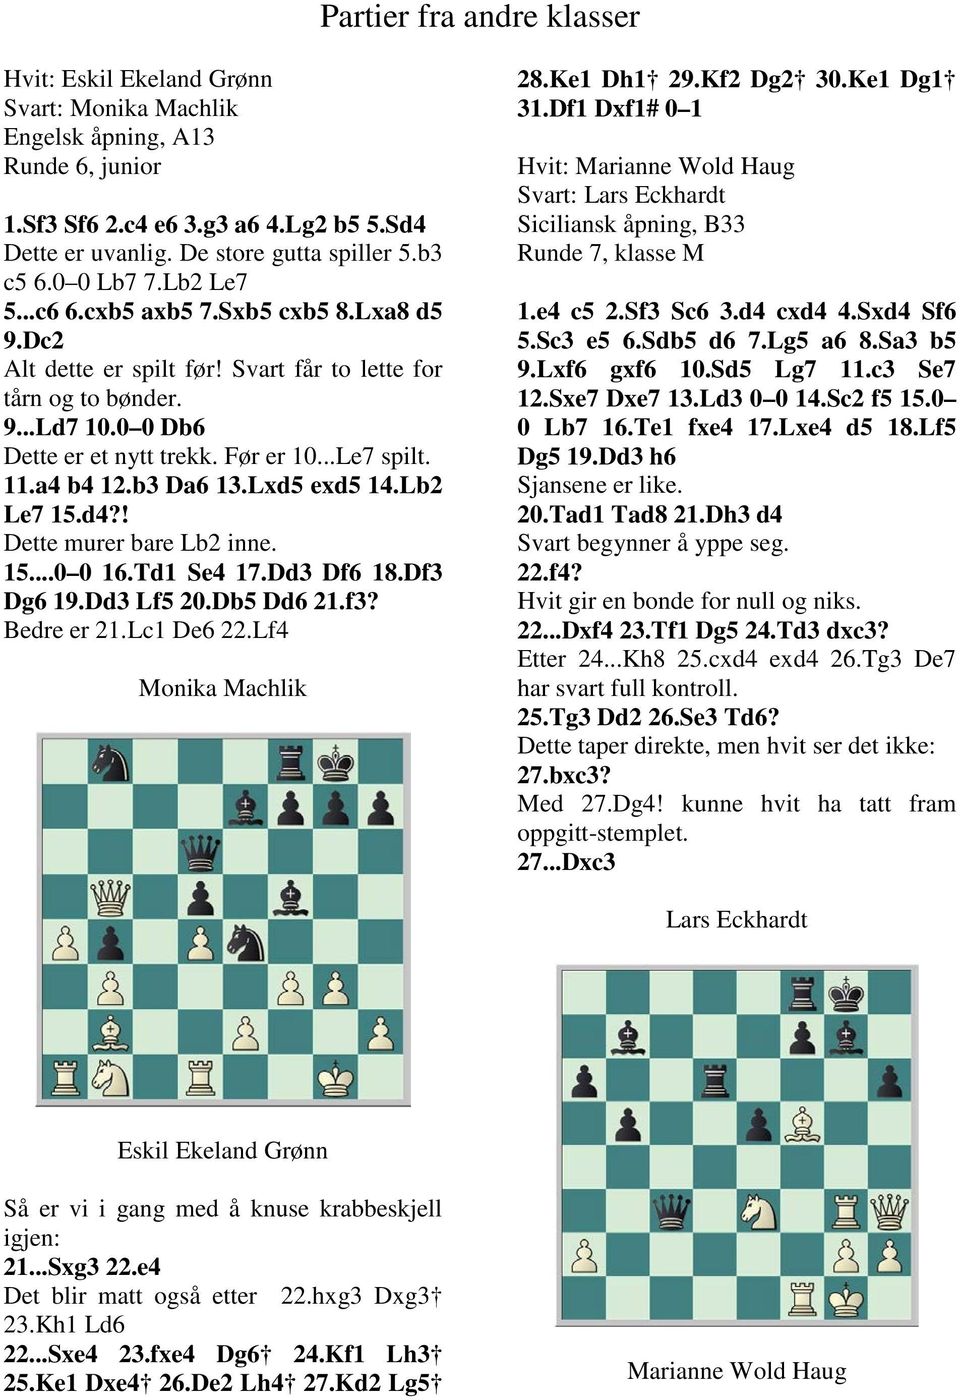 ..Le7 spilt. 11.a4 b4 12.b3 Da6 13.Lxd5 exd5 14.Lb2 Le7 15.d4?! Dette murer bare Lb2 inne. 15...0 0 16.Td1 Se4 17.Dd3 Df6 18.Df3 Dg6 19.Dd3 Lf5 20.Db5 Dd6 21.f3? Bedre er 21.Lc1 De6 22.